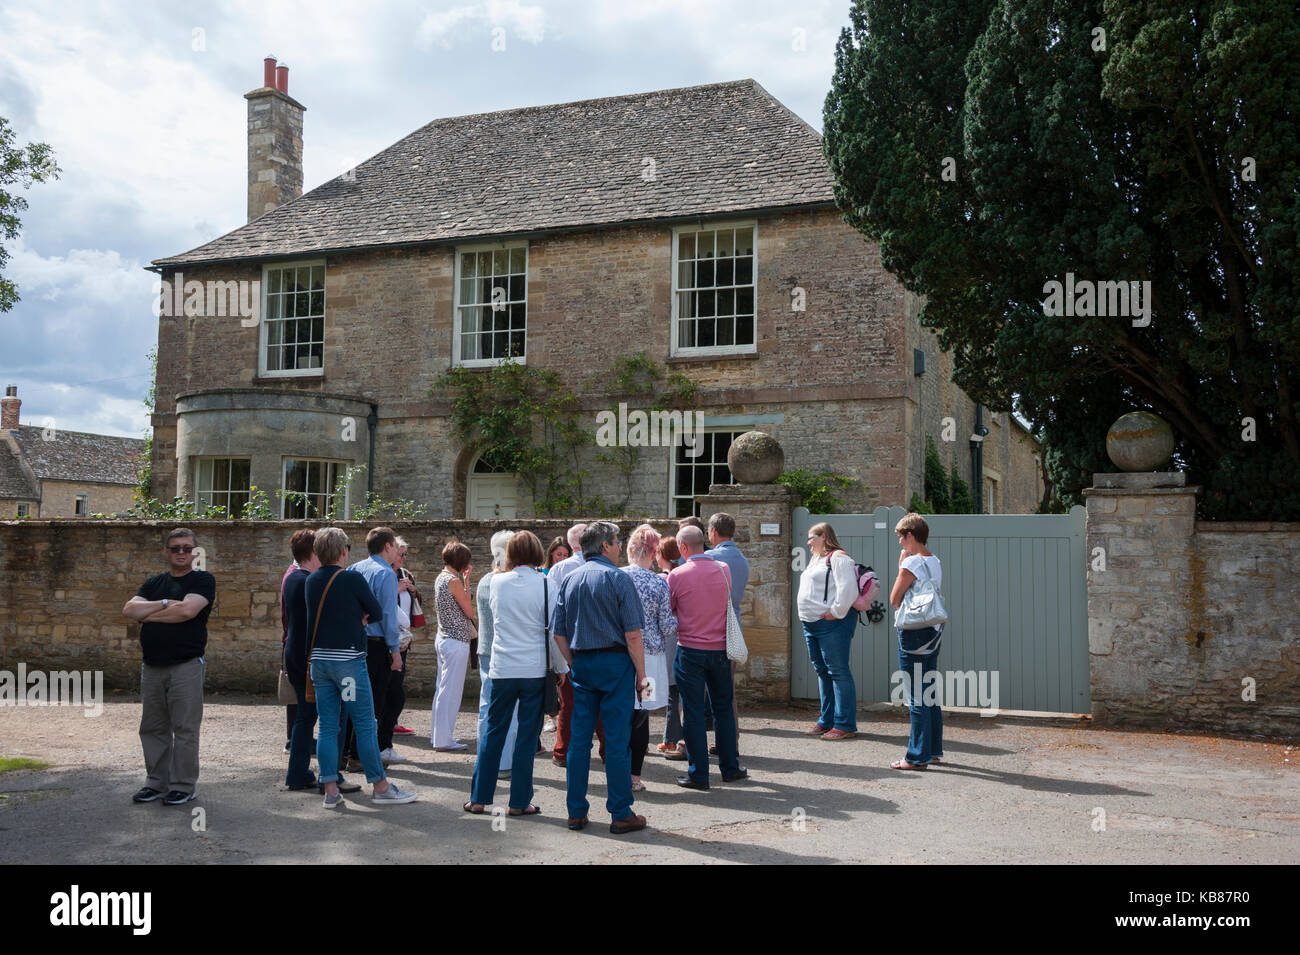 Touristen auf einem Rundgang im Bampton, Oxfordshire, einen Standort für Szenen im TV-Programm Downton Abbey, außerhalb Churchgate House Stockfoto